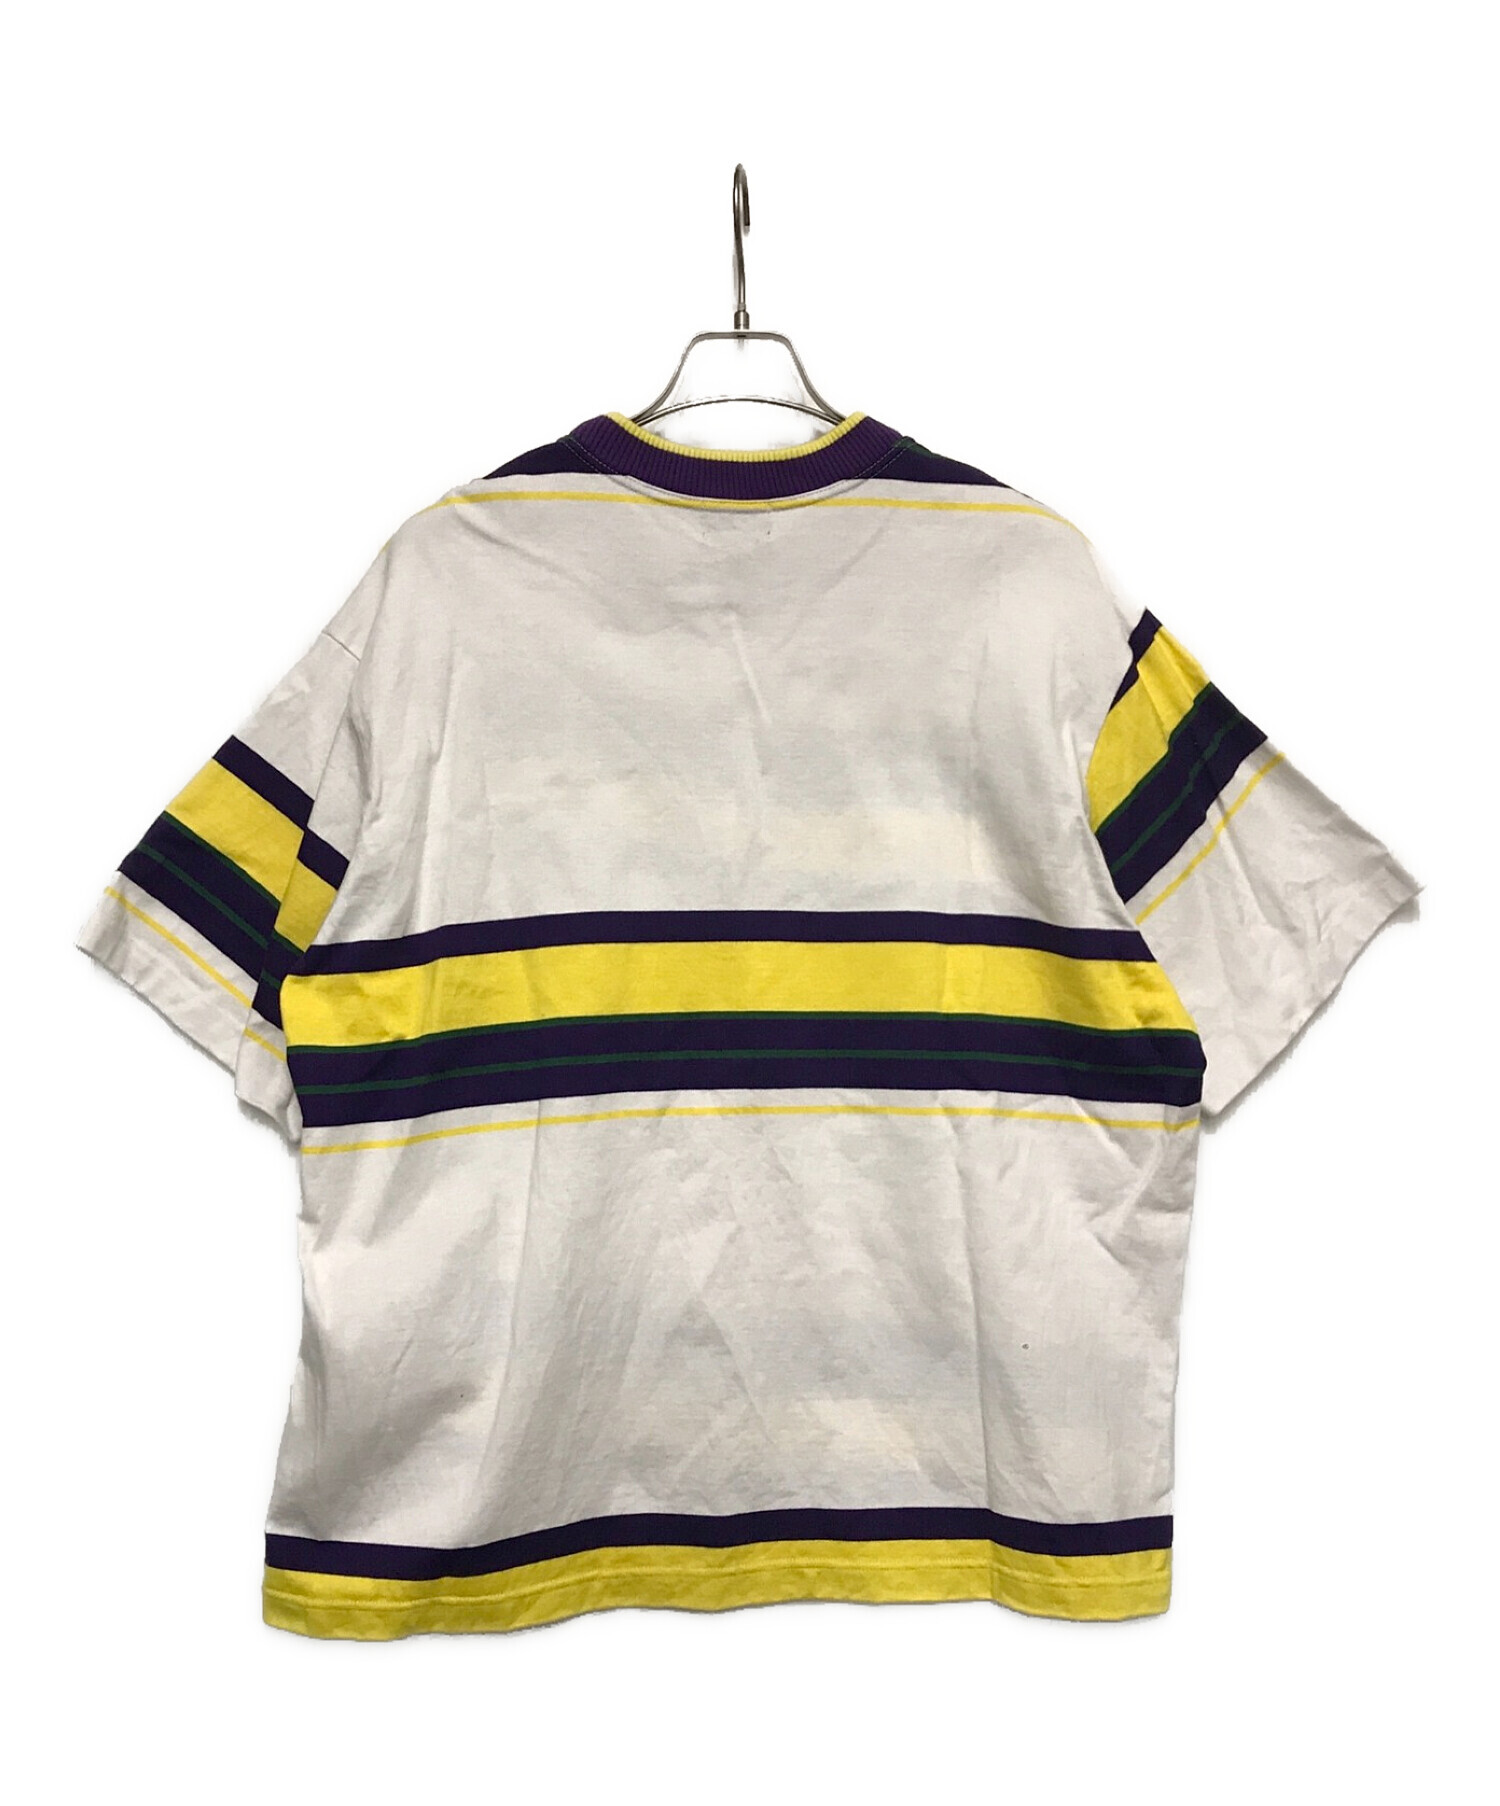 KOLOR (カラー) コットンビッグボーダーTシャツ ホワイト×パープル サイズ:2